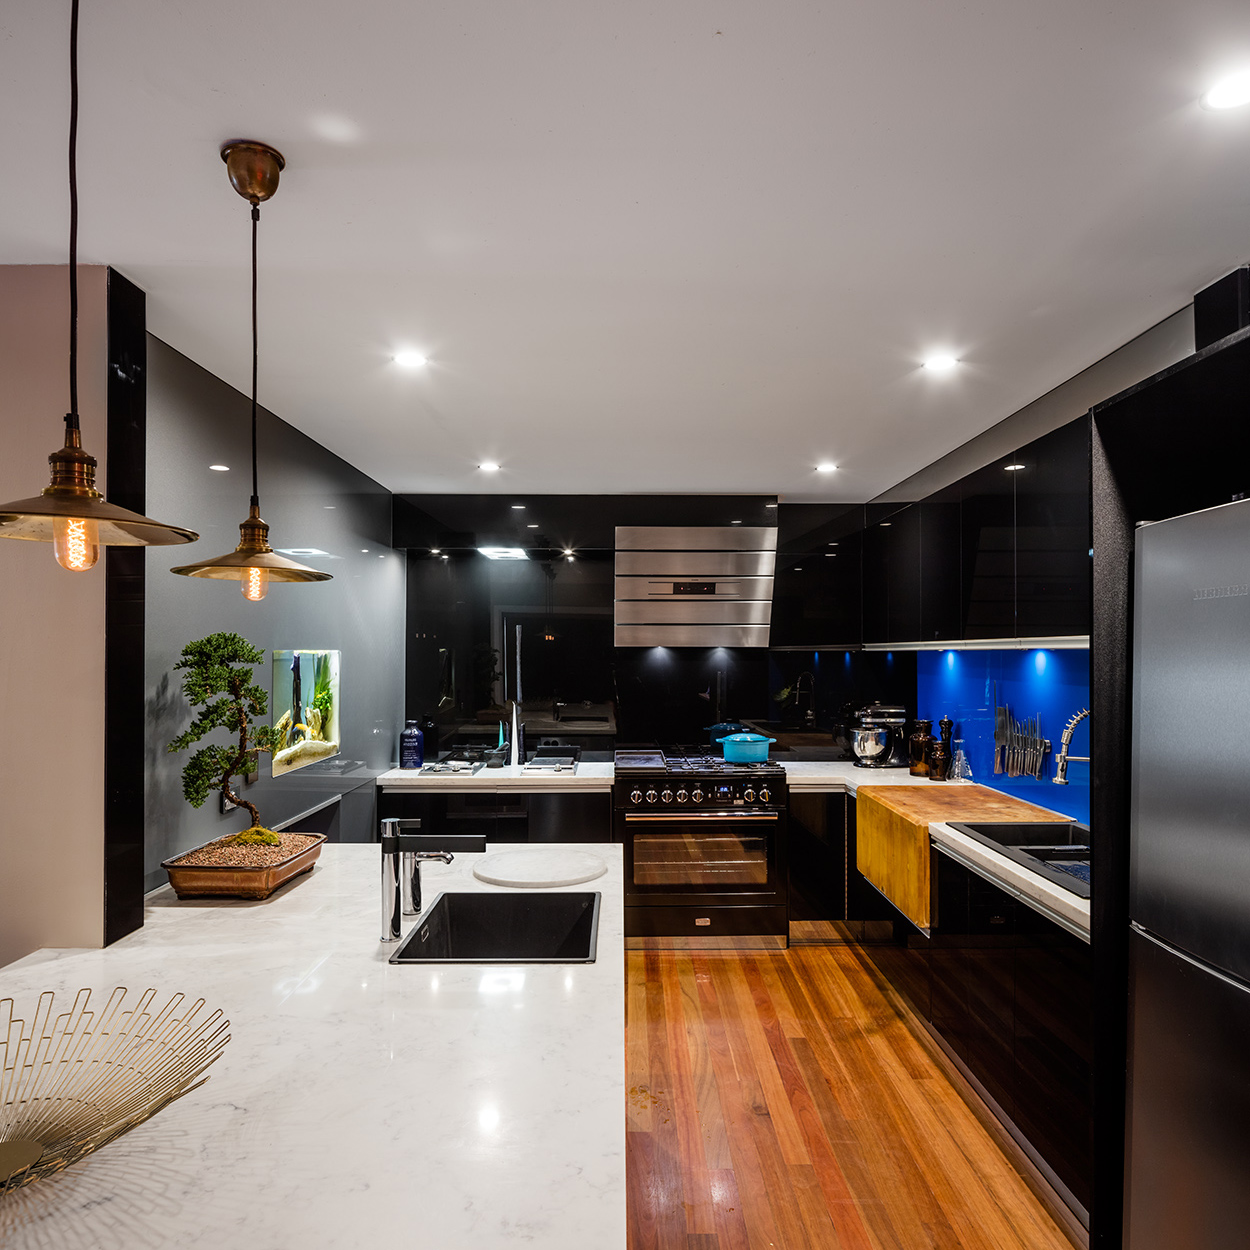 Interior-design-kitchen-photography-freedom-1.jpg